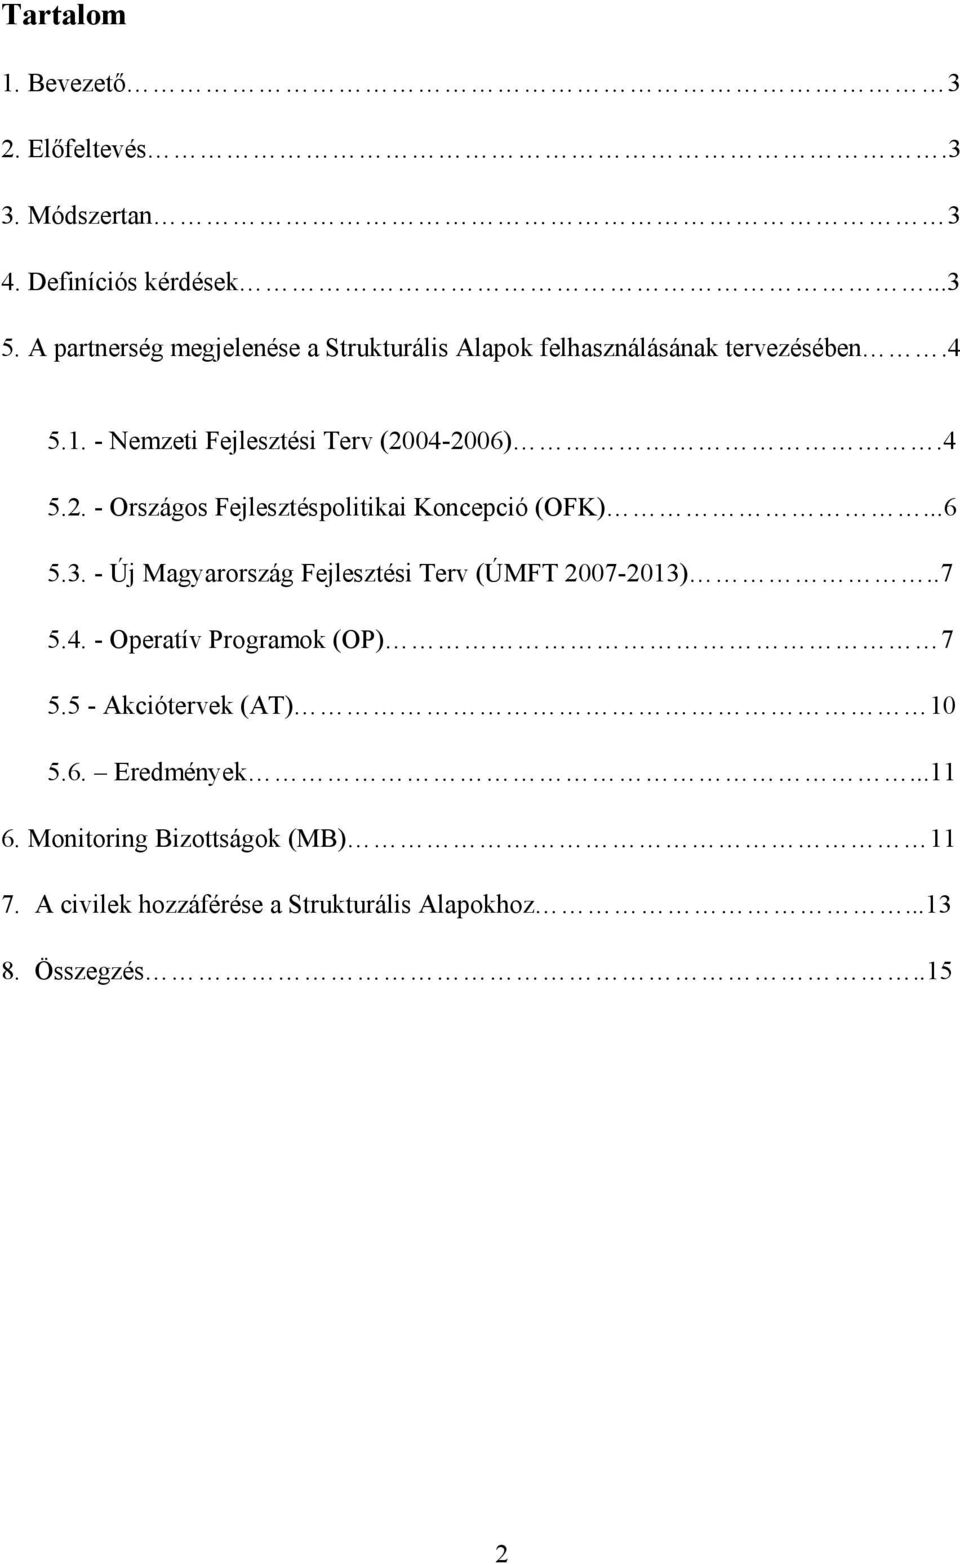 04-2006).4 5.2. - Országos Fejlesztéspolitikai Koncepció (OFK)...6 5.3. - Új Magyarország Fejlesztési Terv (ÚMFT 2007-2013)..7 5.